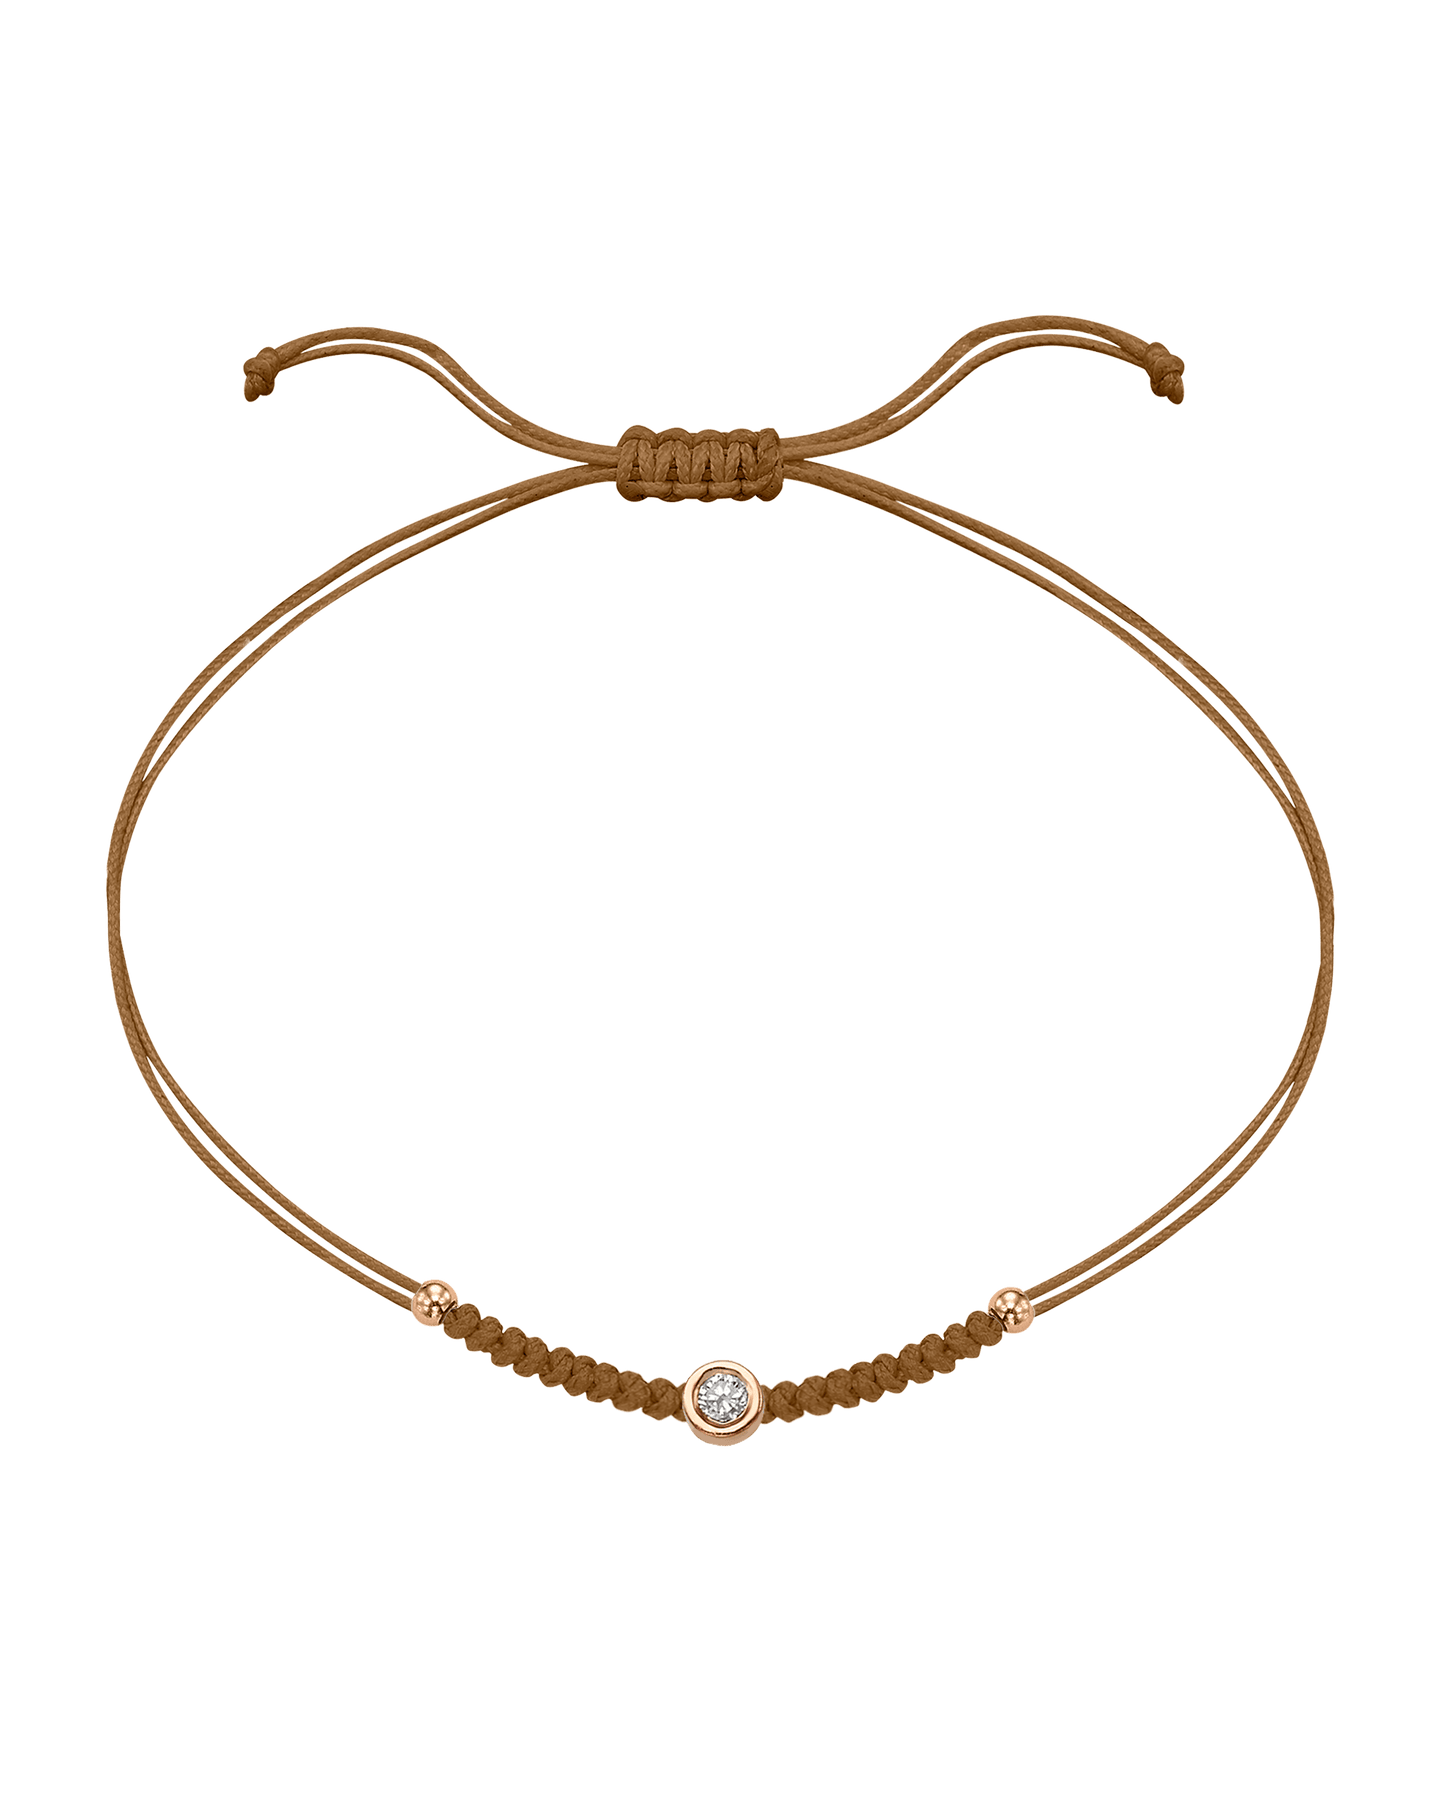 Solid Gold Sphere String of Love - 14K Rose Gold Bracelet 14K Solid Gold Camel Medium: 0.04ct 